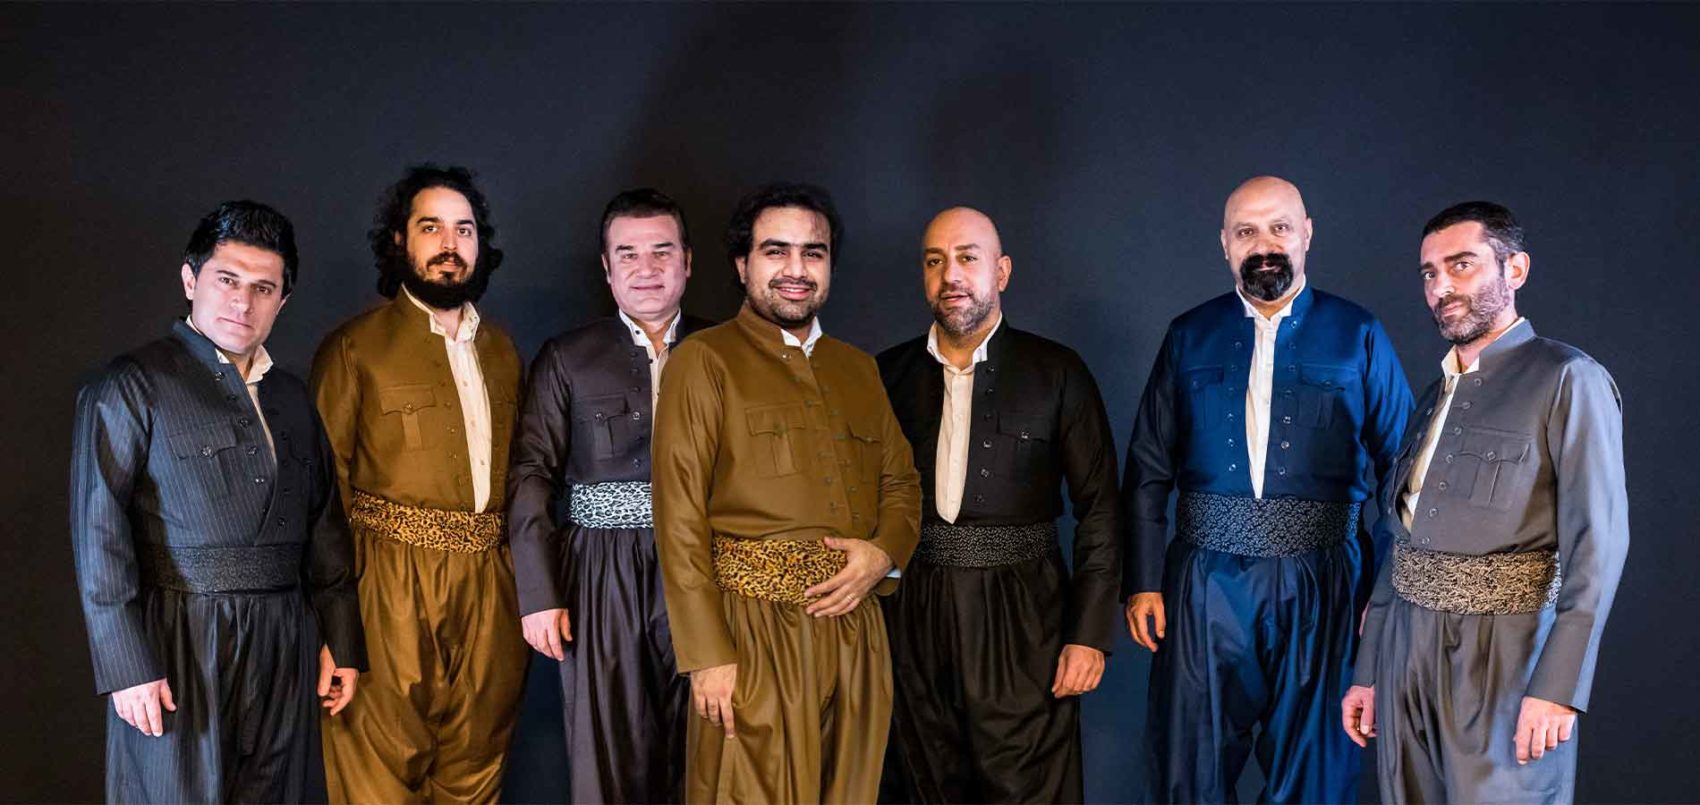 Les sept musiciens et chanteurs de Nishtiman Project, prenne la pose, debout 